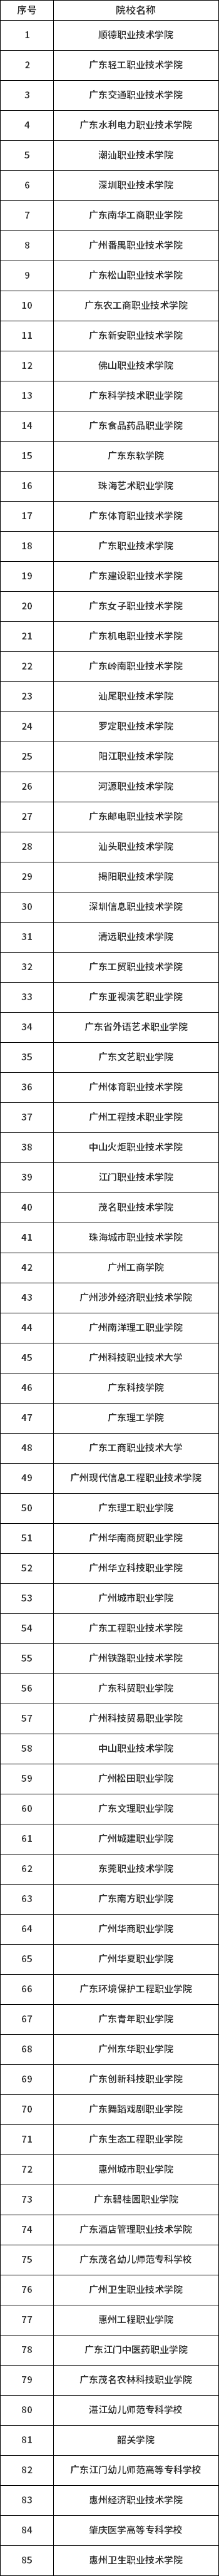 广东2019年高职扩招院校名单